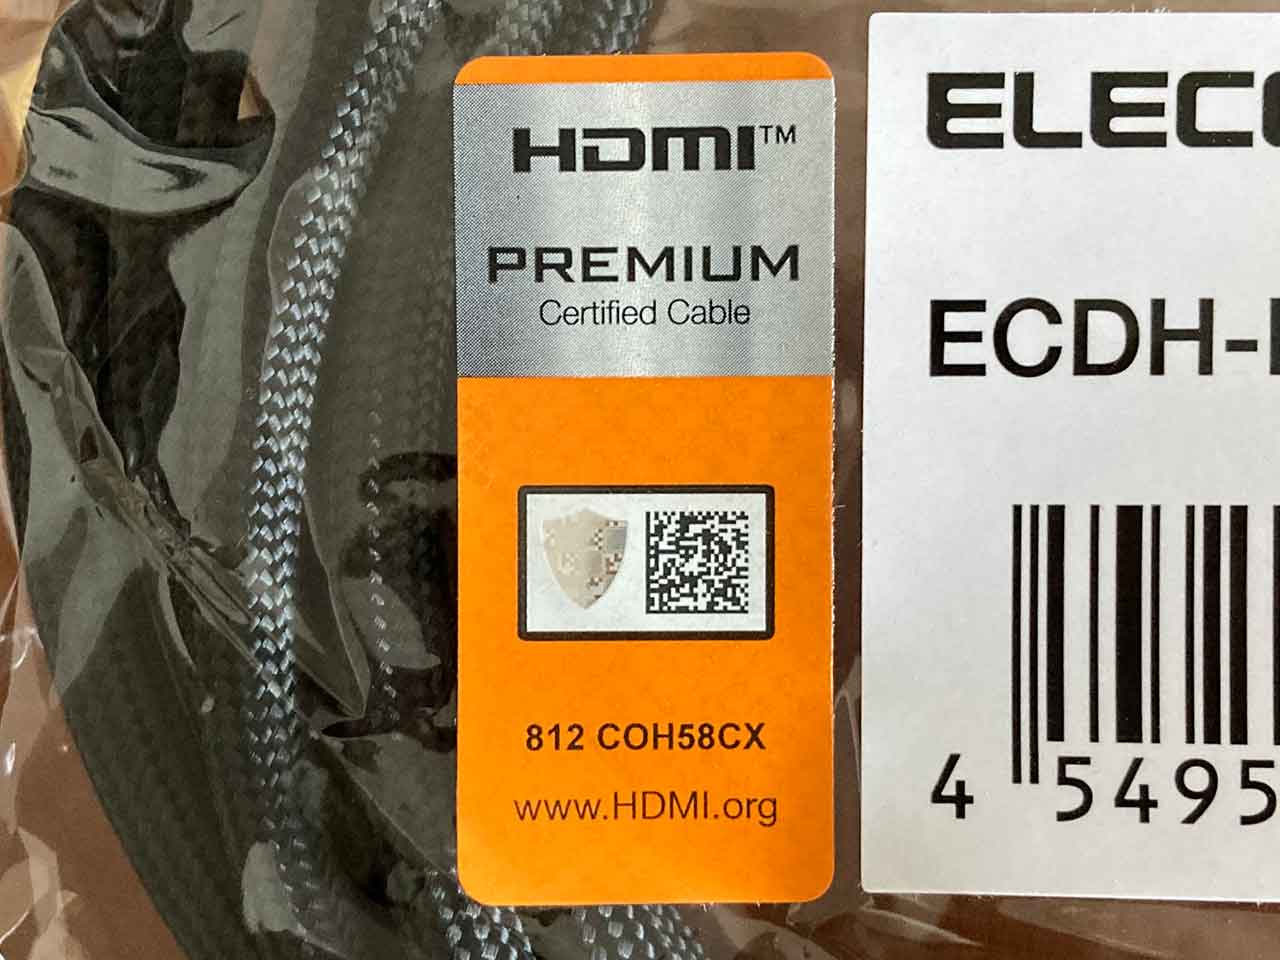 「HDMI PREMIUM Certified Cableラベル」が認証済みの証